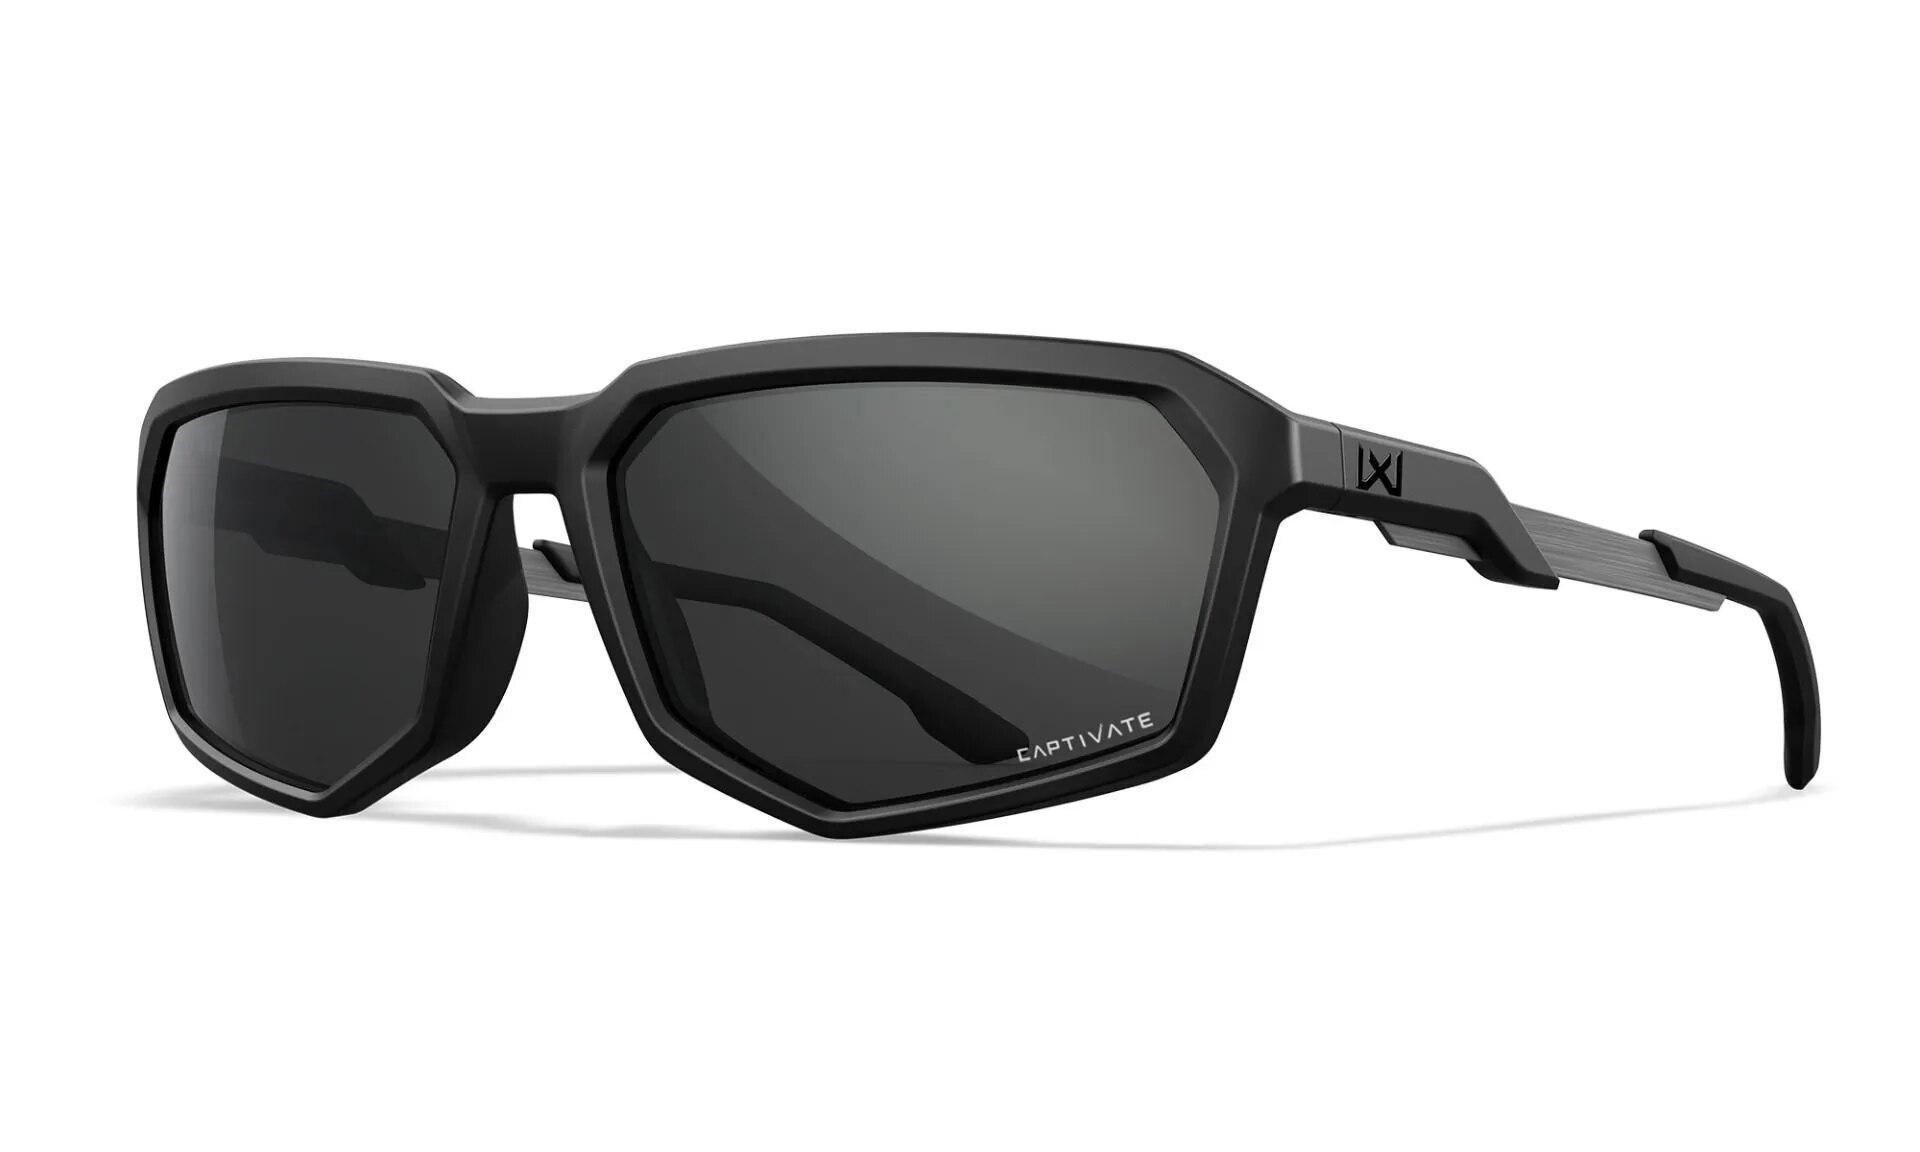 Slnečné okuliare Recon Captivate Wiley X® – Captivate™ sivé, Čierna (Farba: Čierna, Šošovky: Captivate™ sivé)